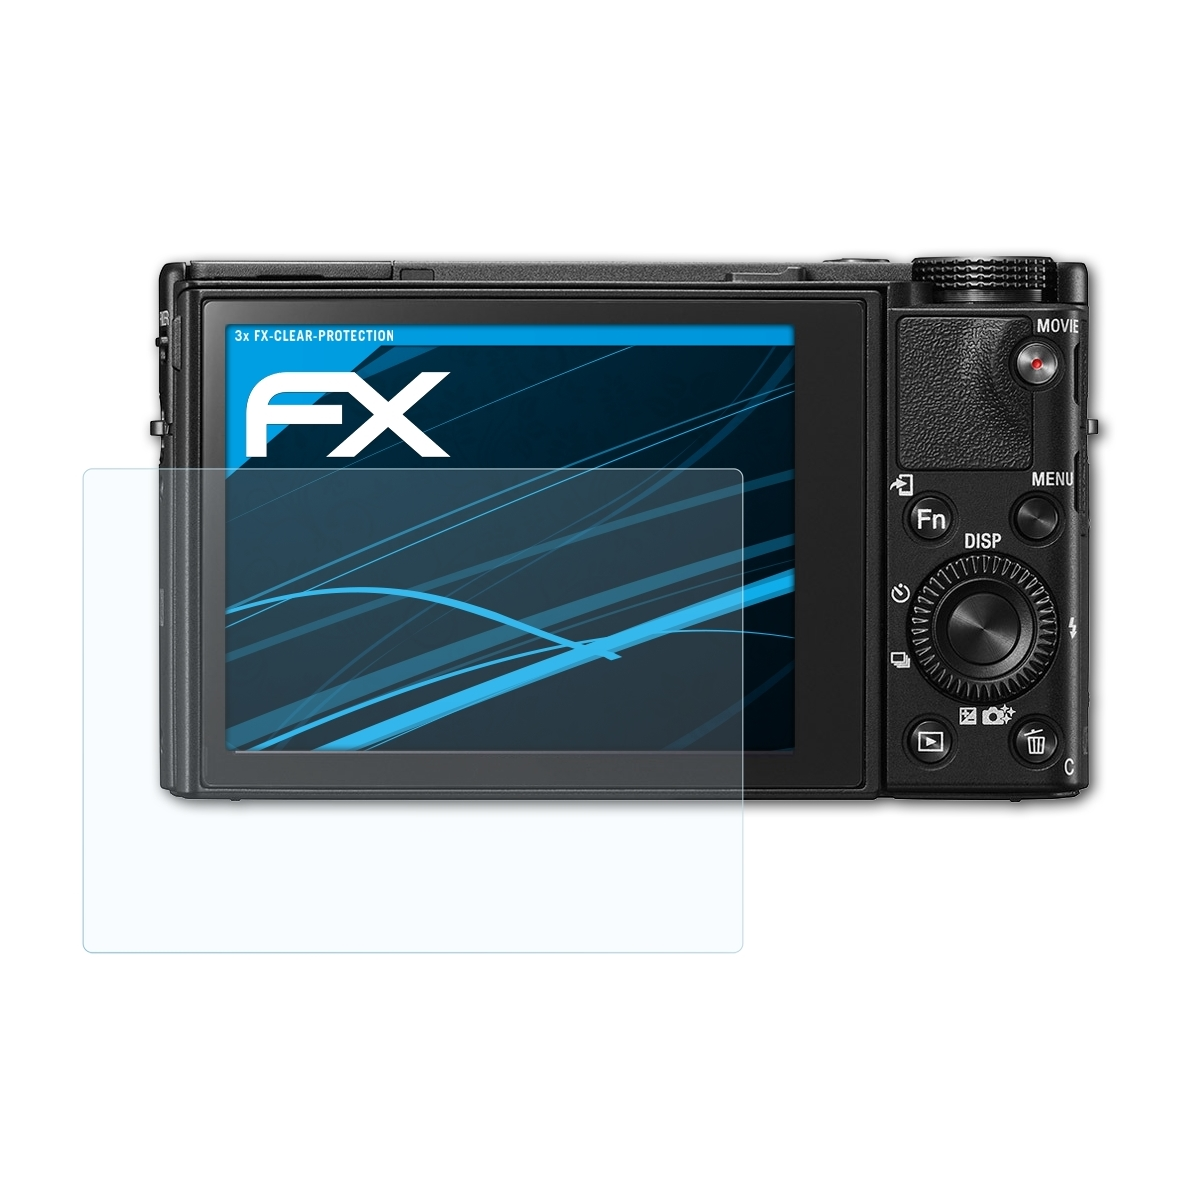 FX-Clear Displayschutz(für ATFOLIX DSC-RX100 3x V) Sony